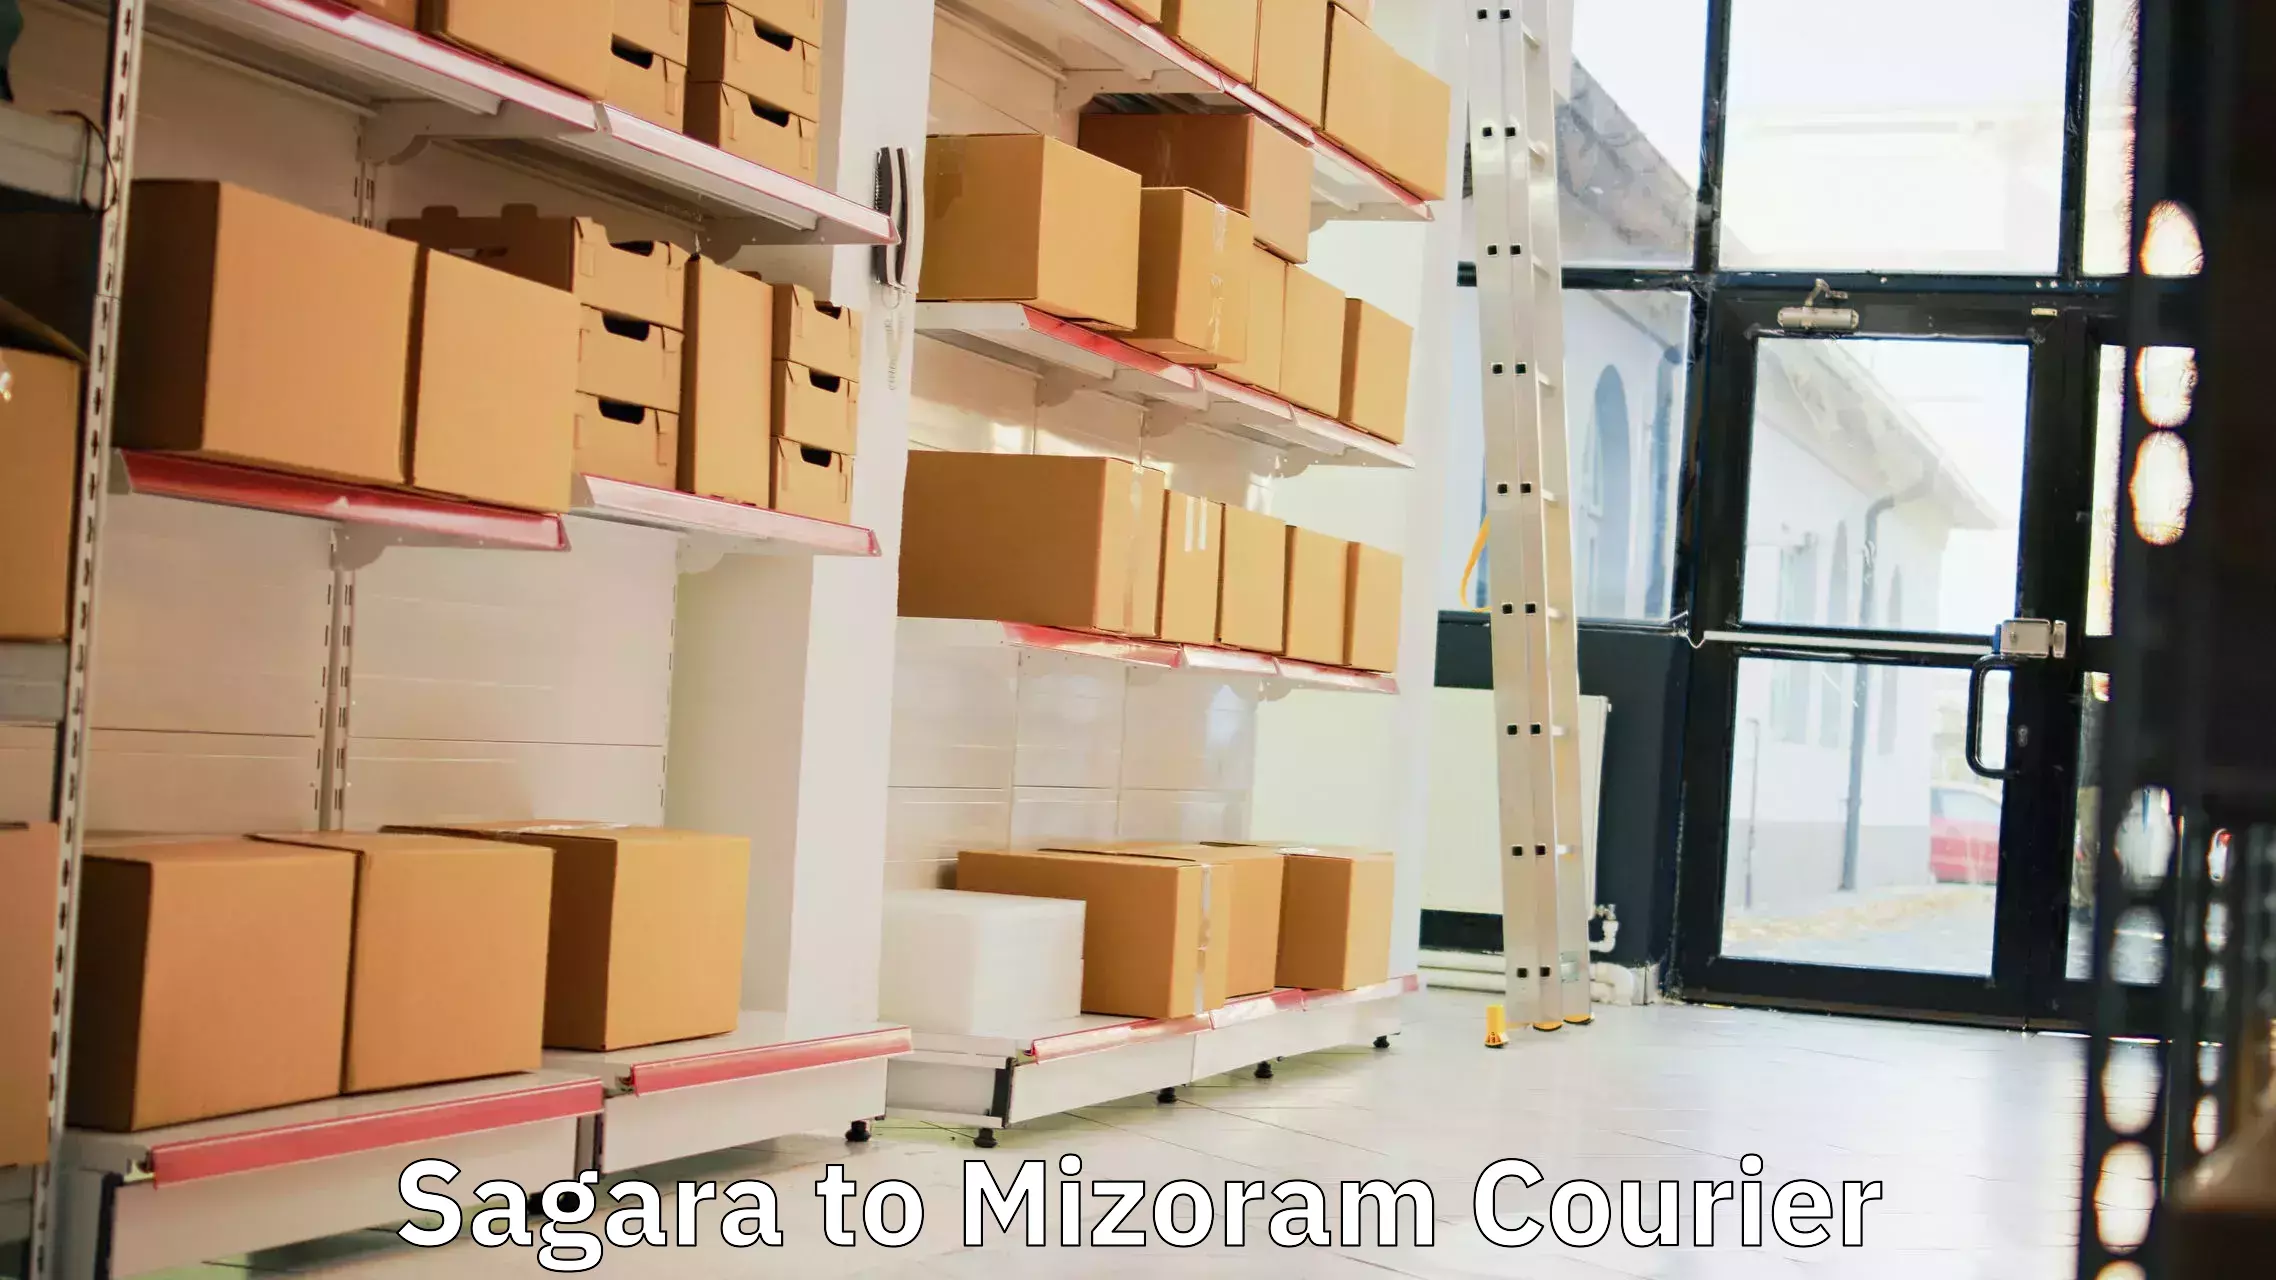 Global logistics network Sagara to Mizoram